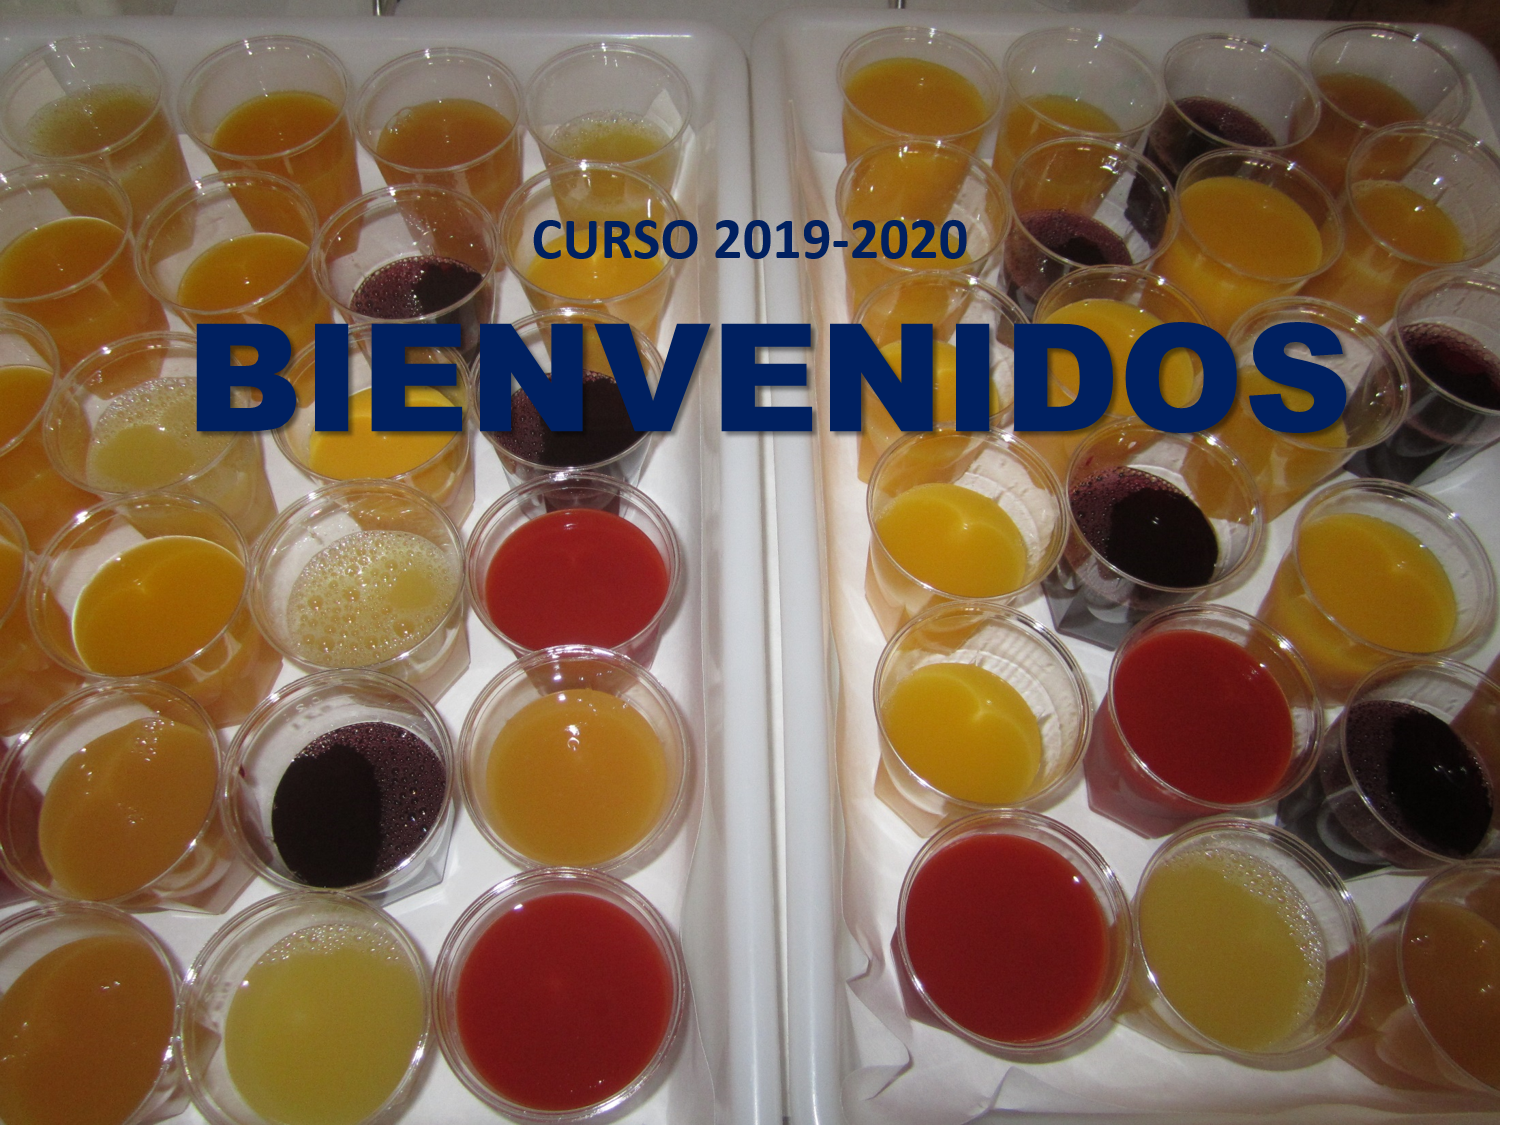 INICIO DEL CURSO 2019-2020. LUNES 16 DE SEPTIEMBRE